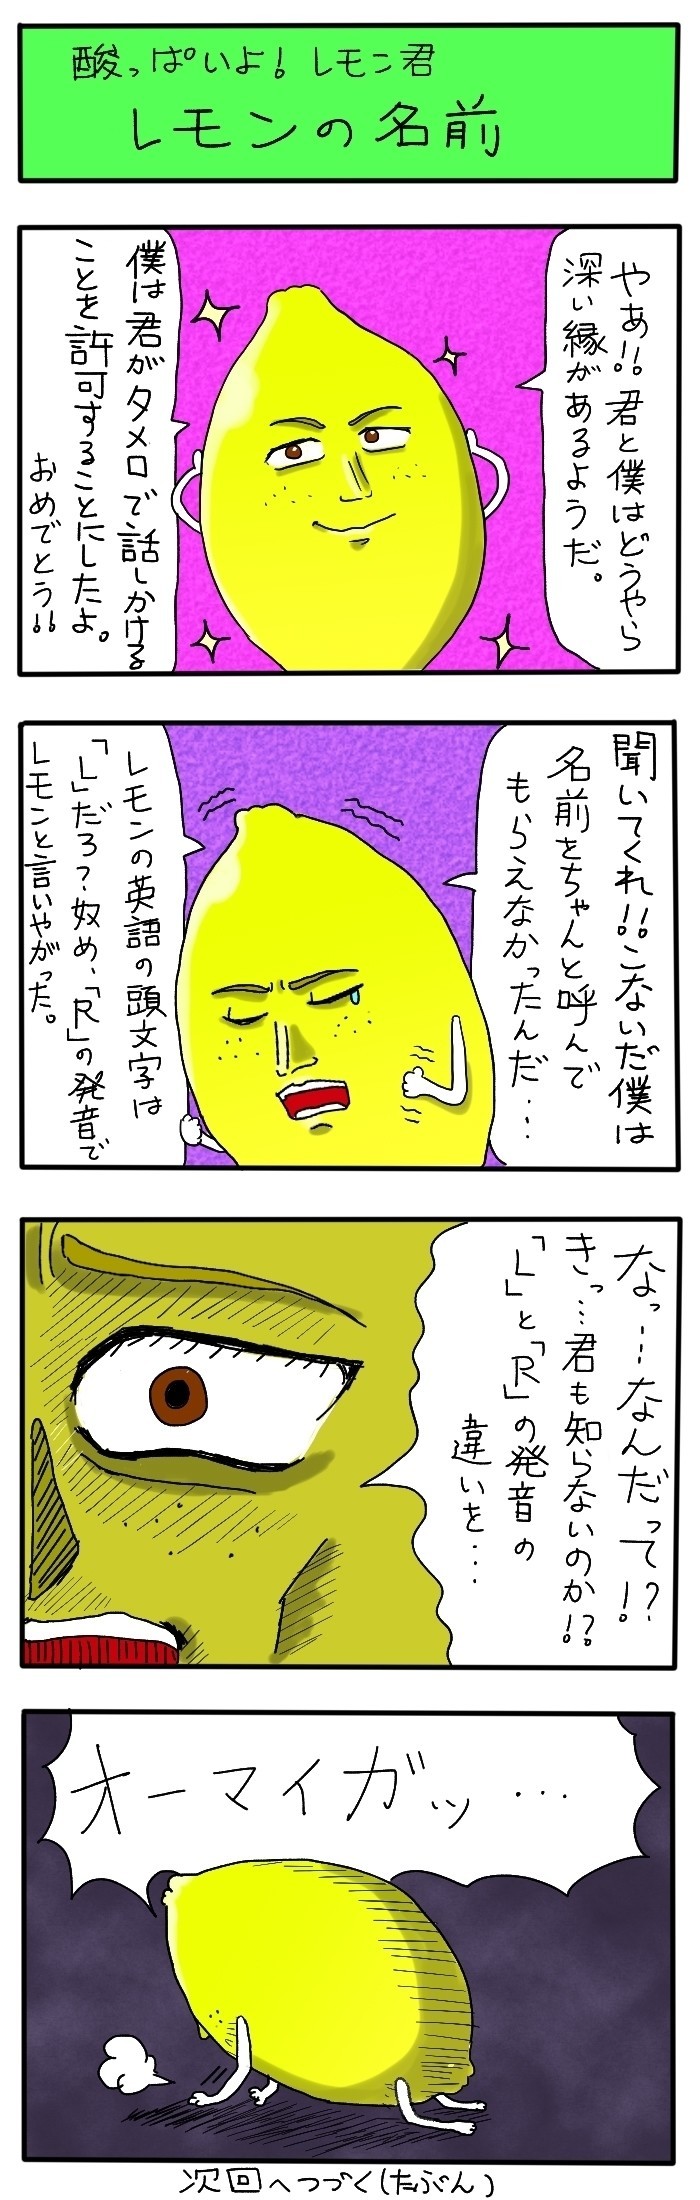 酸っぱいよ レモン君 レモンの名前 Tomosuta Note